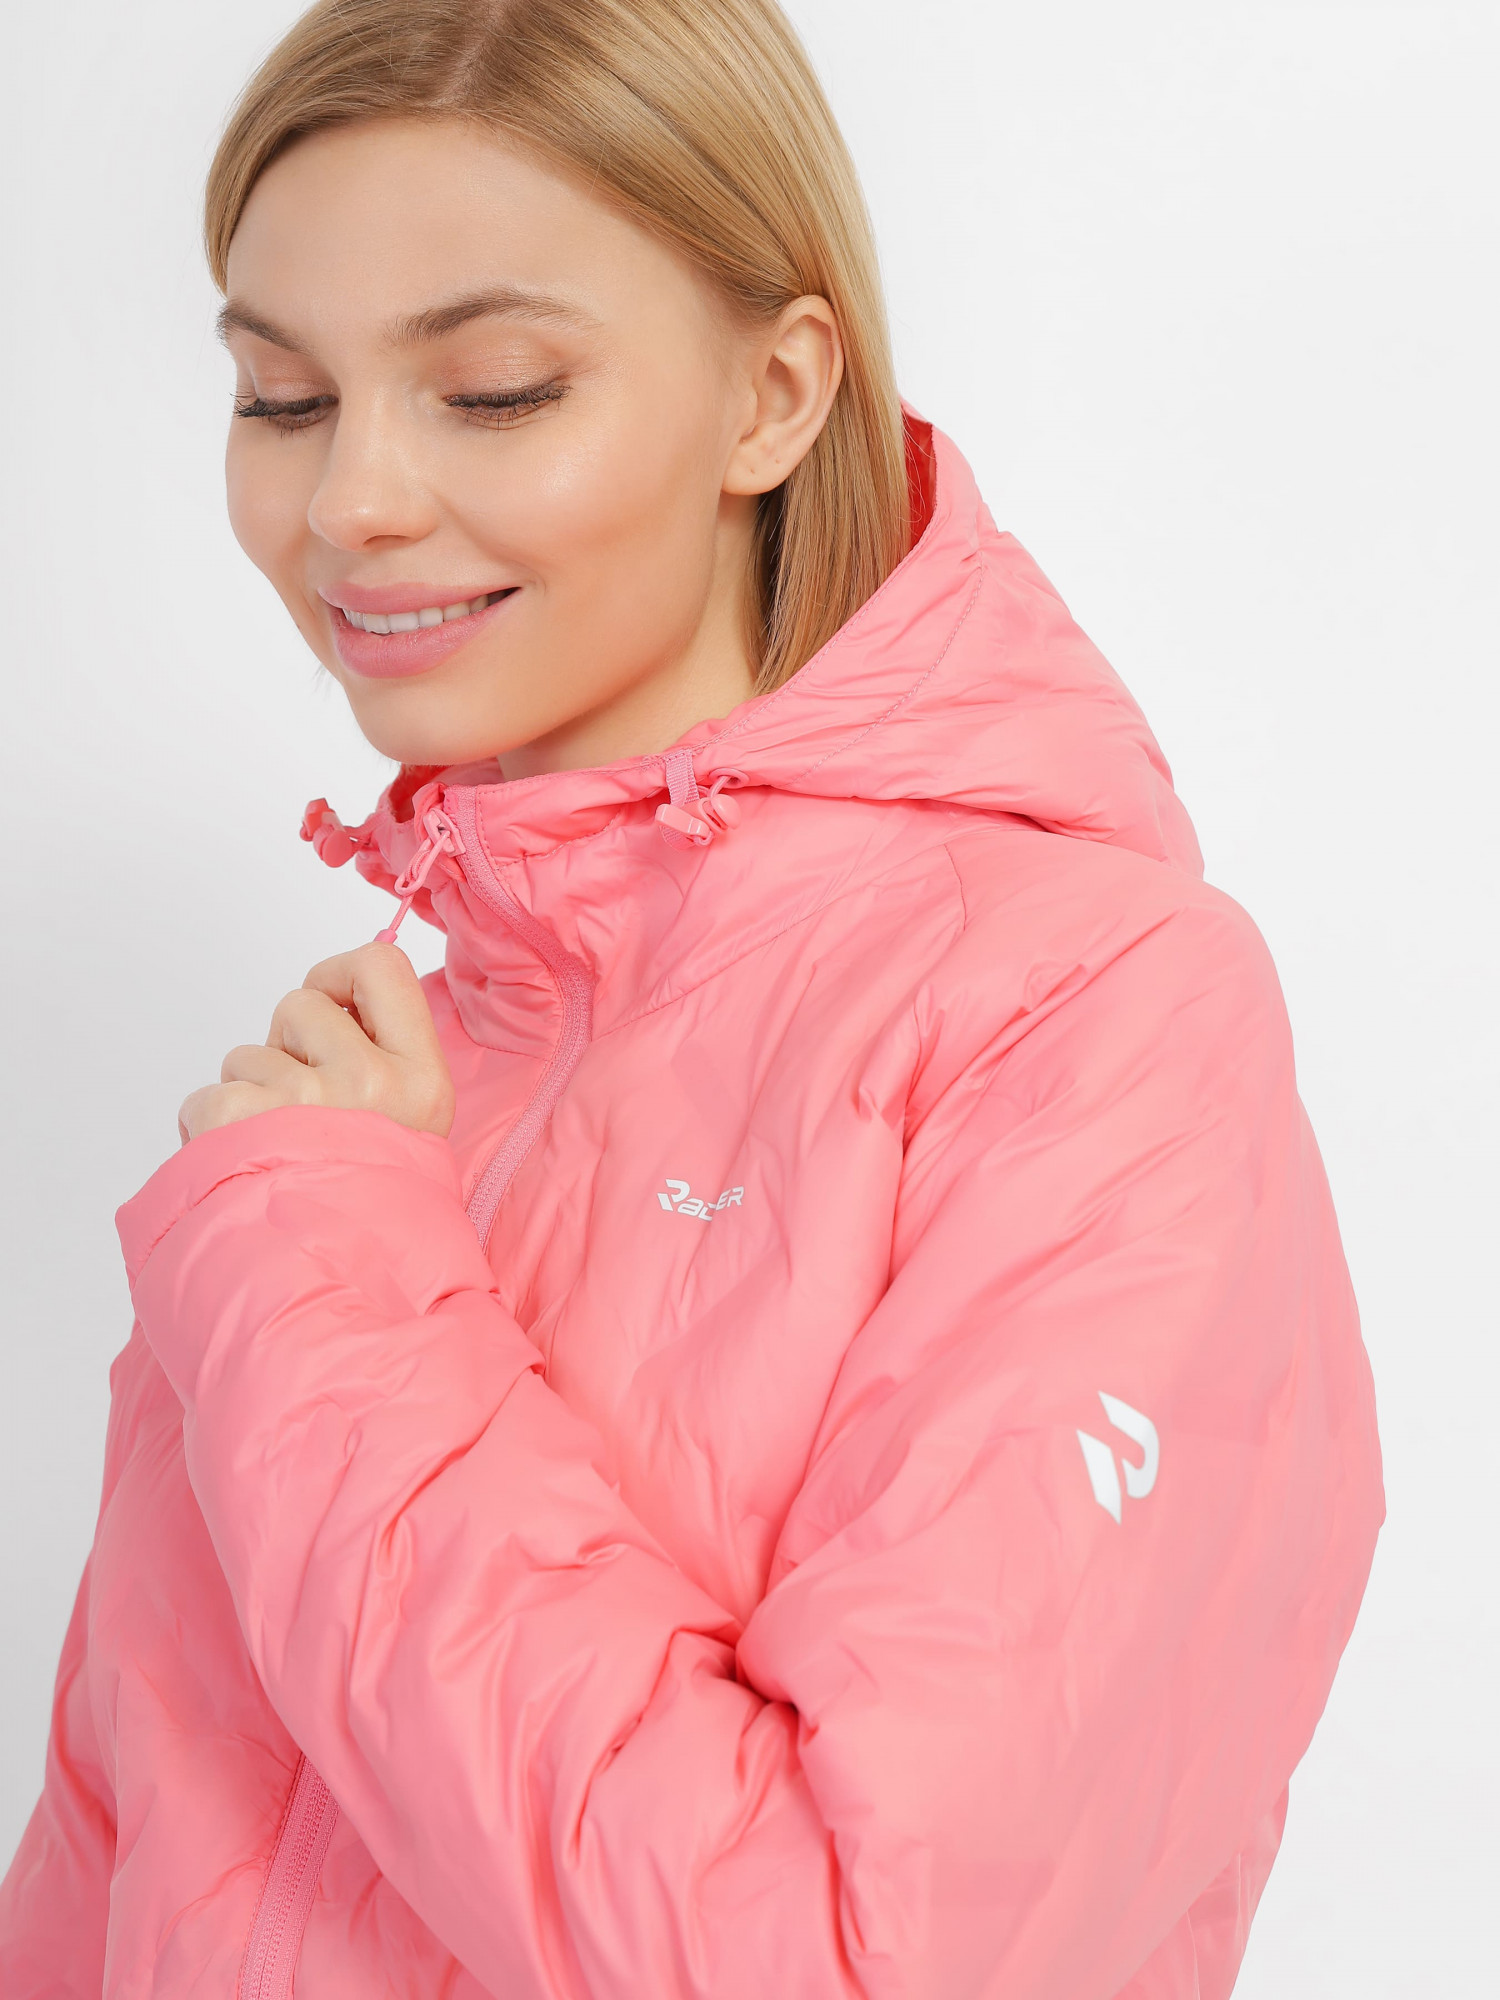 Куртка женская Radder Ally розовый 123307-600 изображение 5